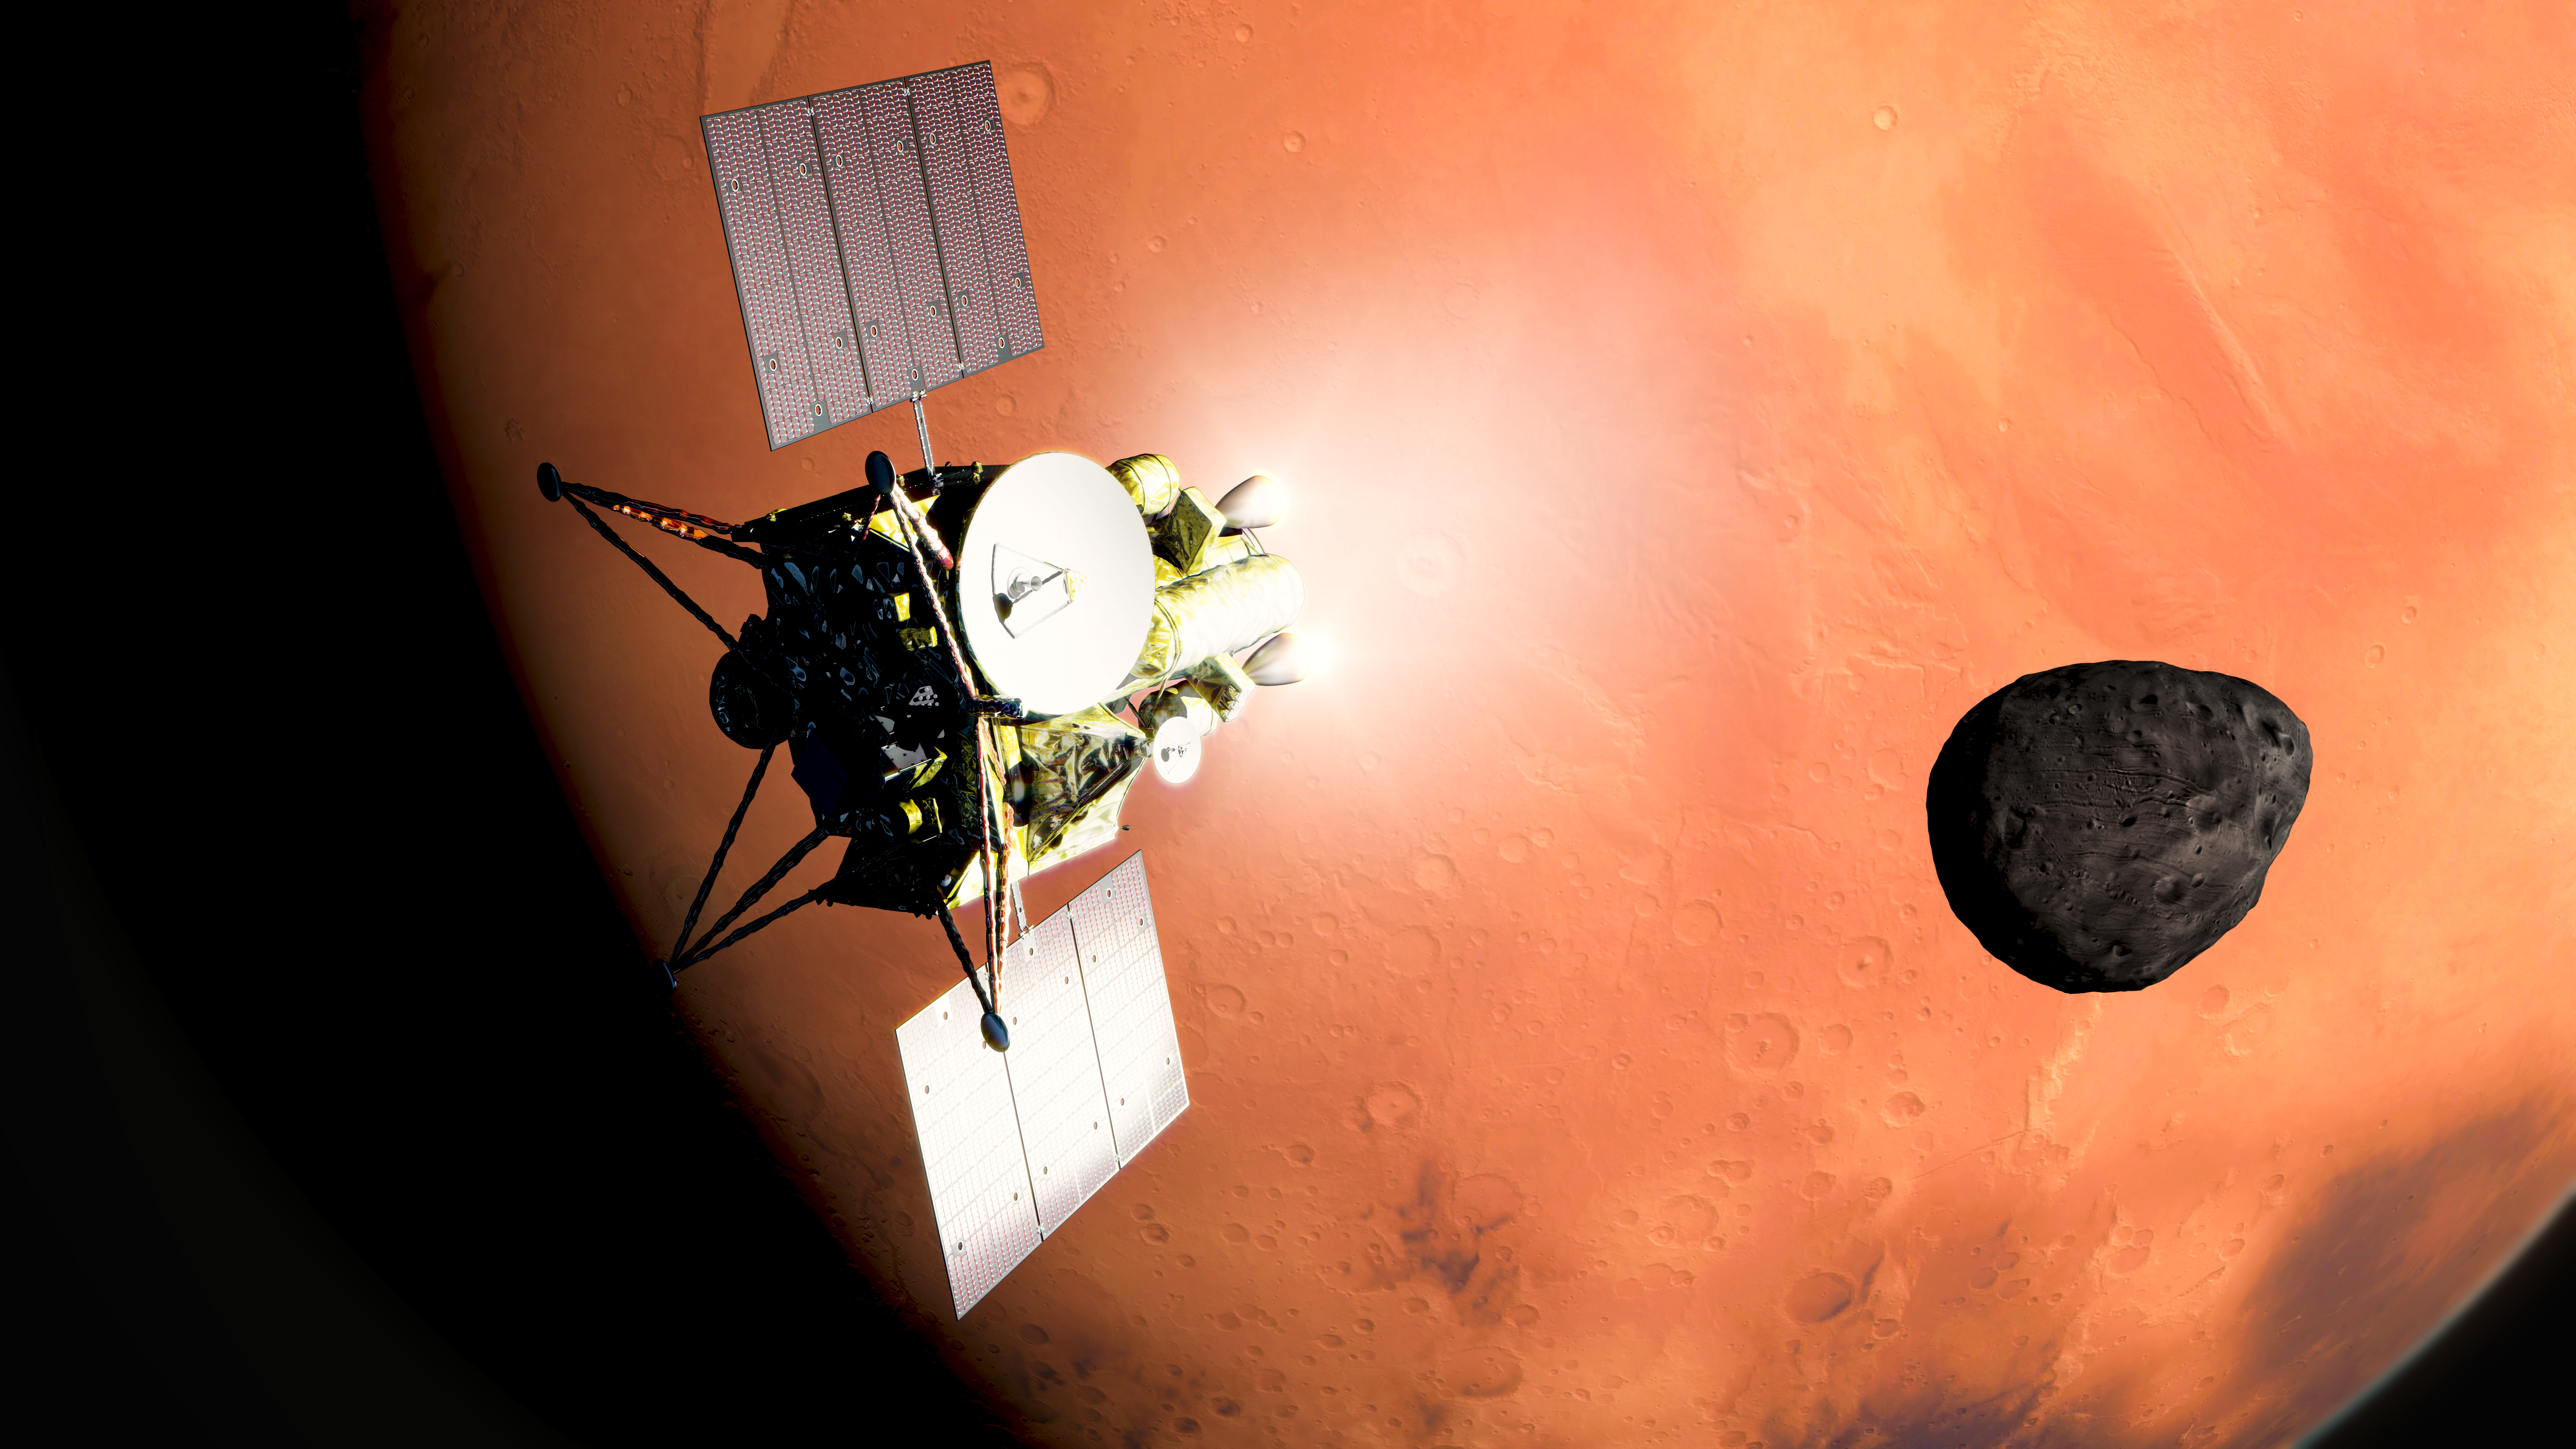 Mars orbit insertion (MOI)